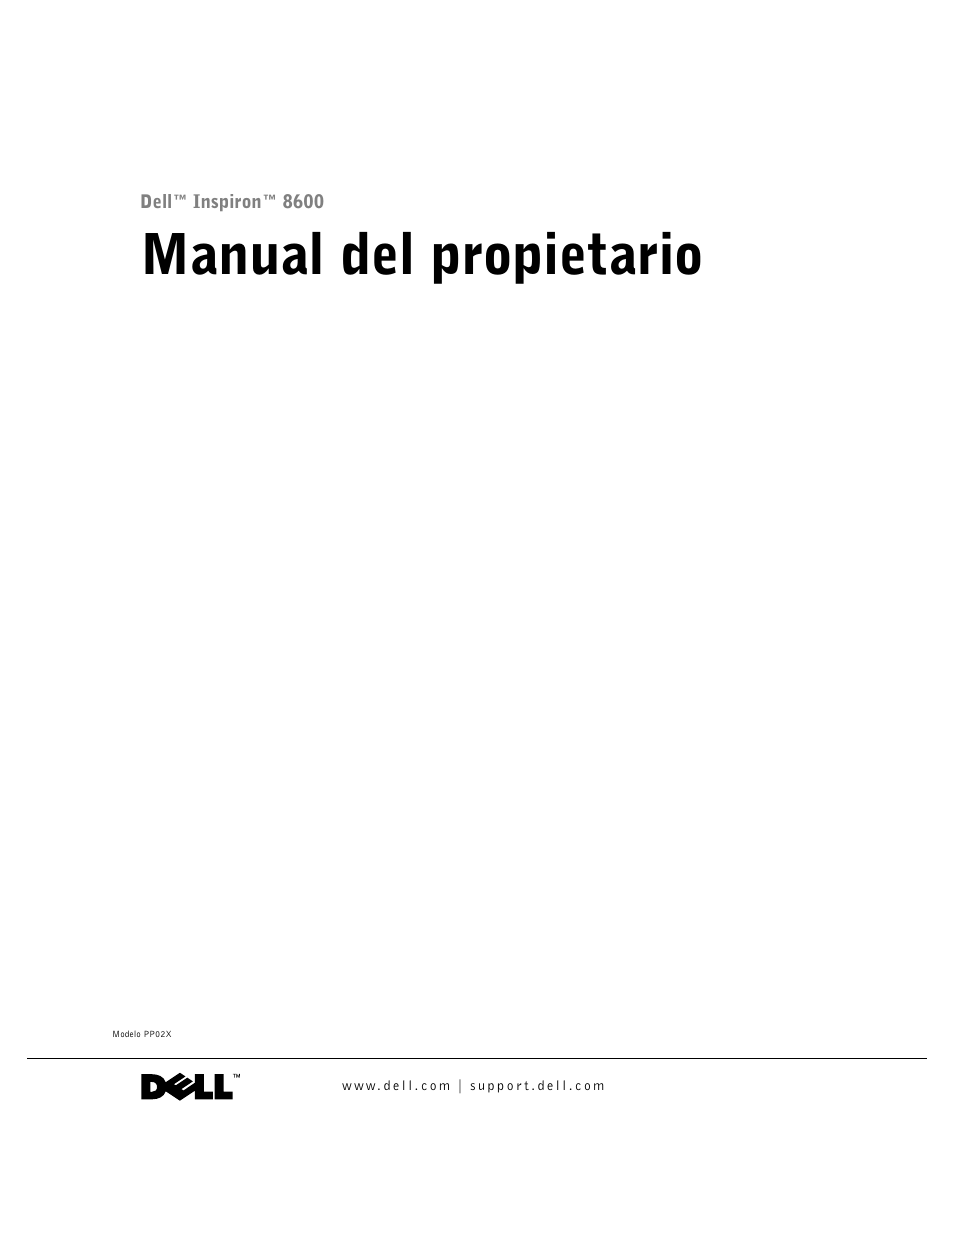 Dell Inspiron 8600 Manual del usuario | Páginas: 176